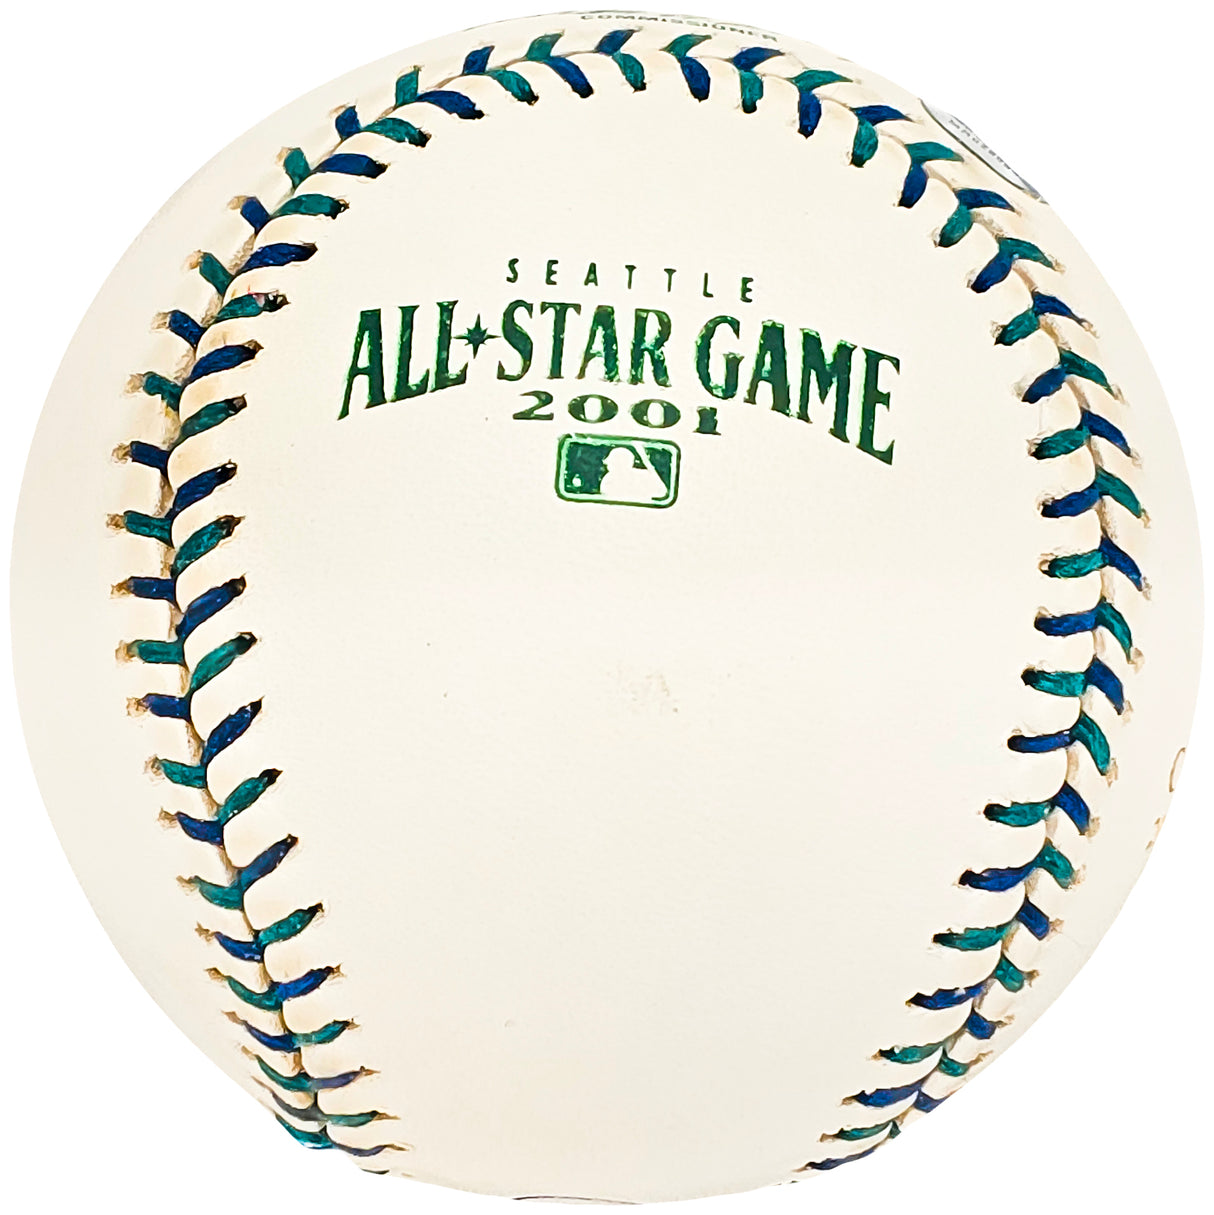 Cal Ripken Jr. Autographed Official 2001 All Star Logo MLB Game Baseball Baltimore Orioles #15/19 Steiner & MLB Holo #MR028563